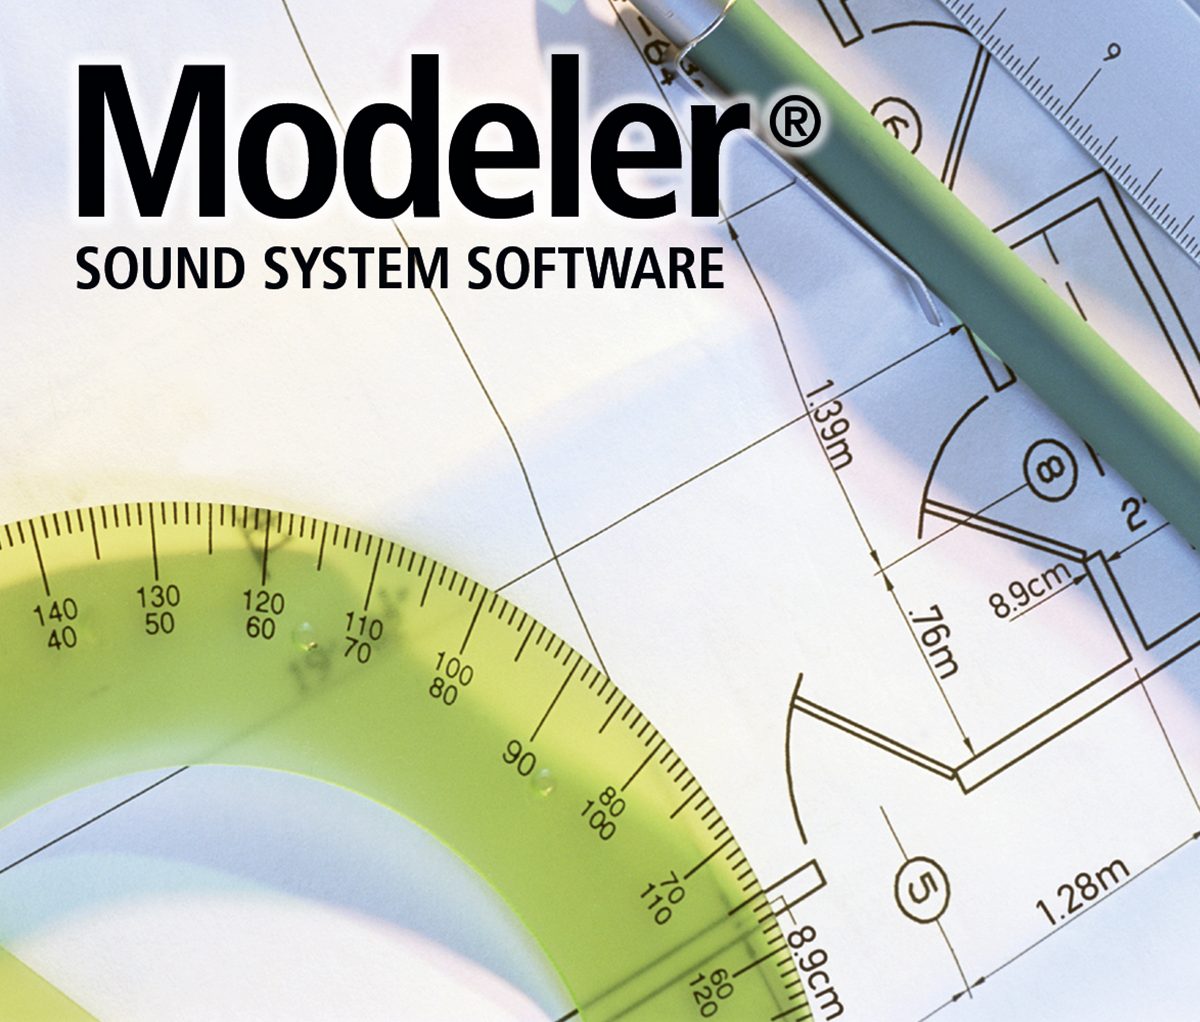 Modeler 音响系统软件